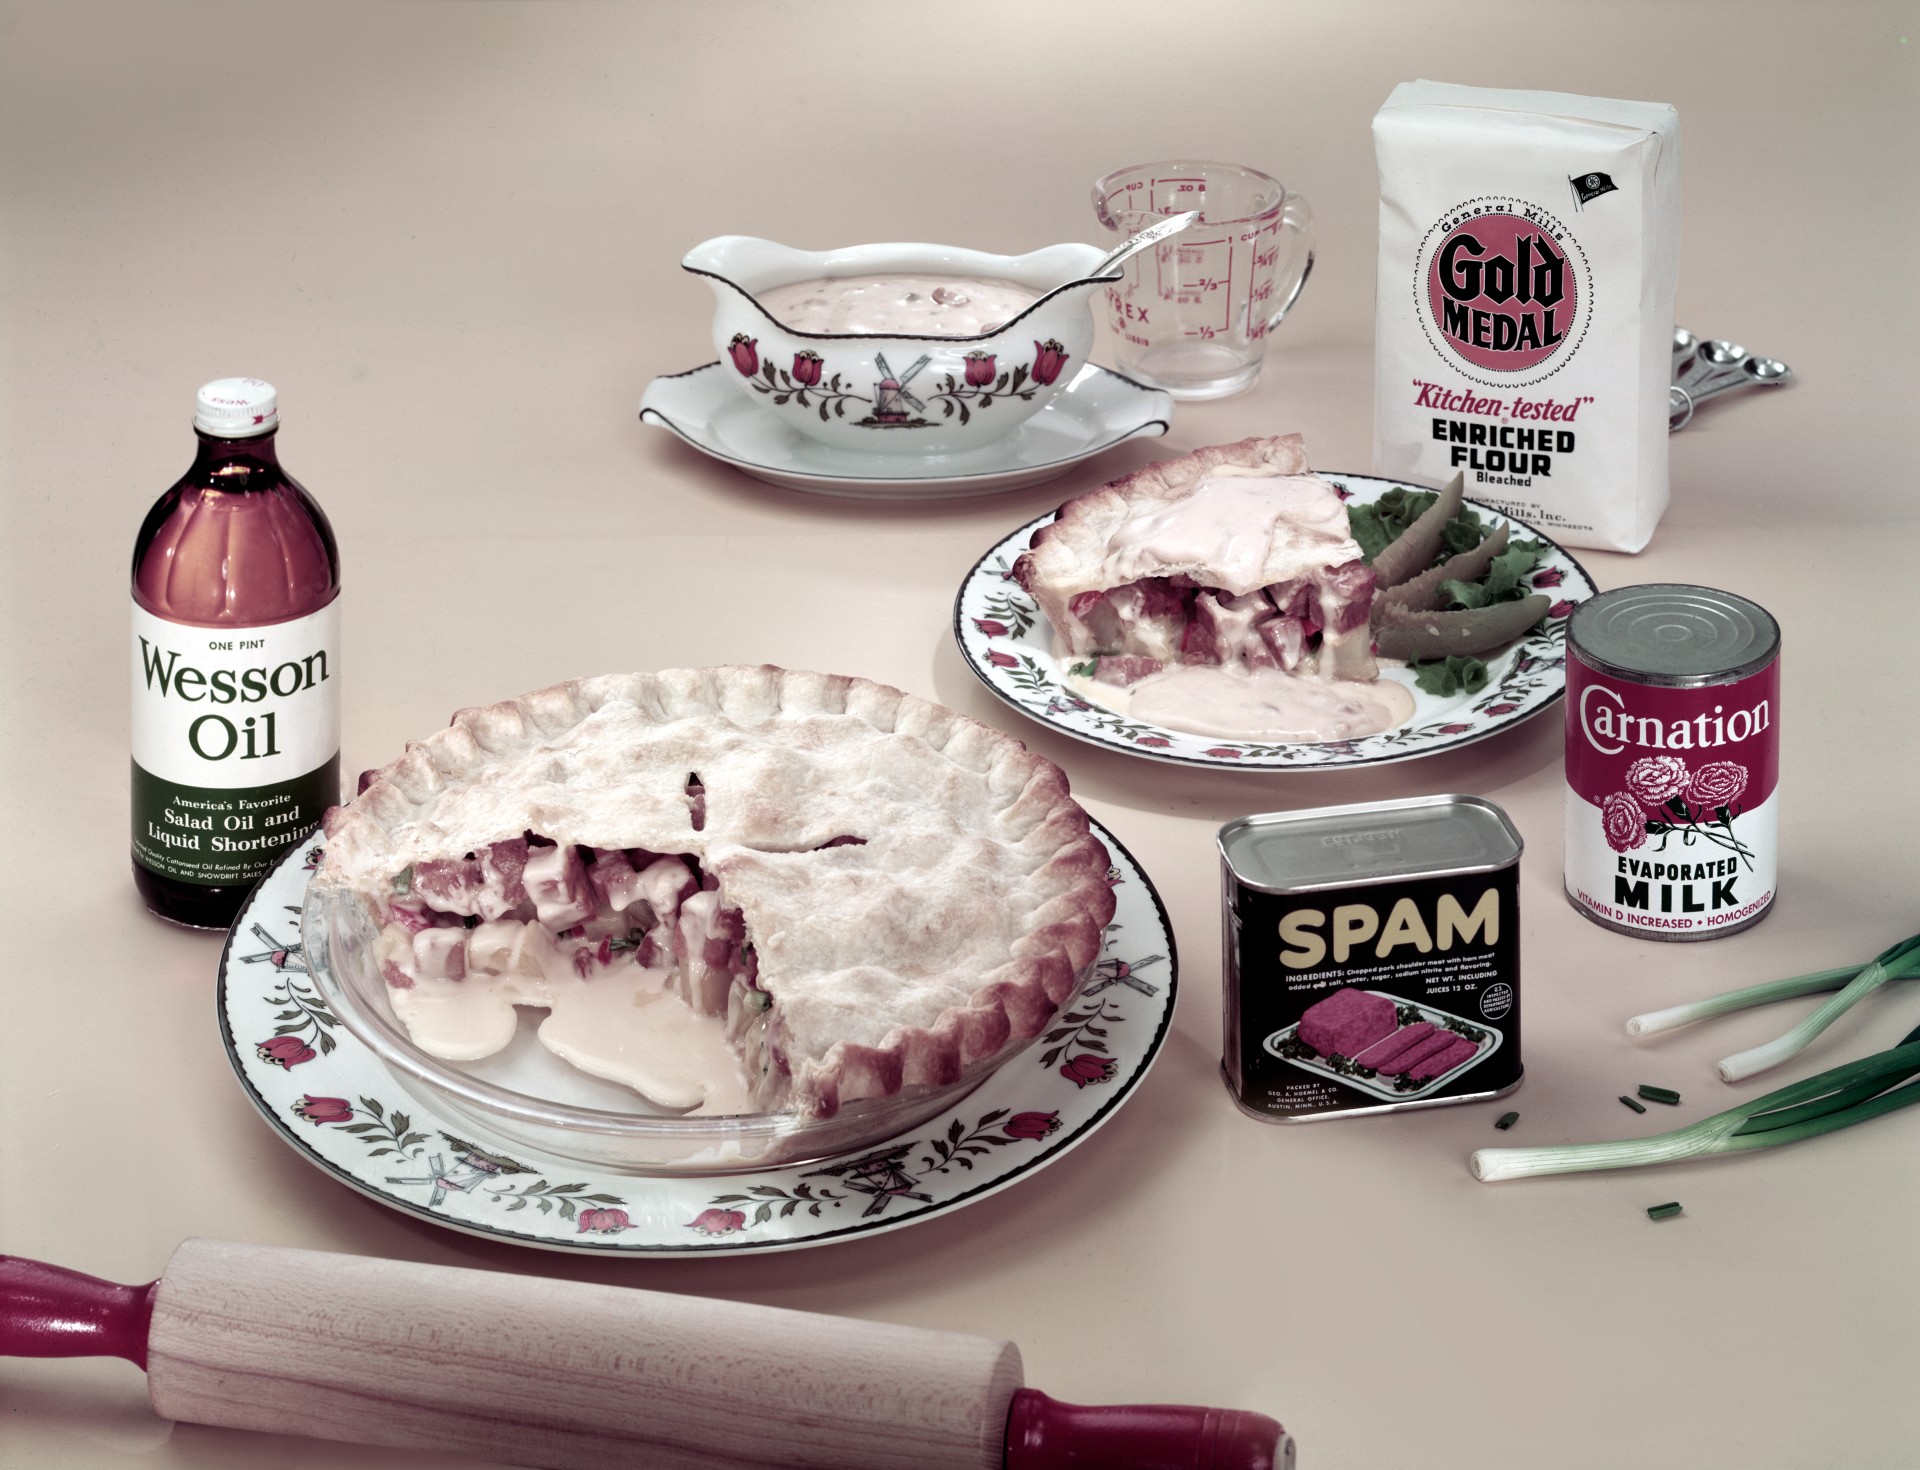 Vista de un pastel hecho con carne enlatada marca Spam, papas, cebolletas y crema de champiñones, años 50 o 60. (Foto de Tom Kelley/Getty Images)